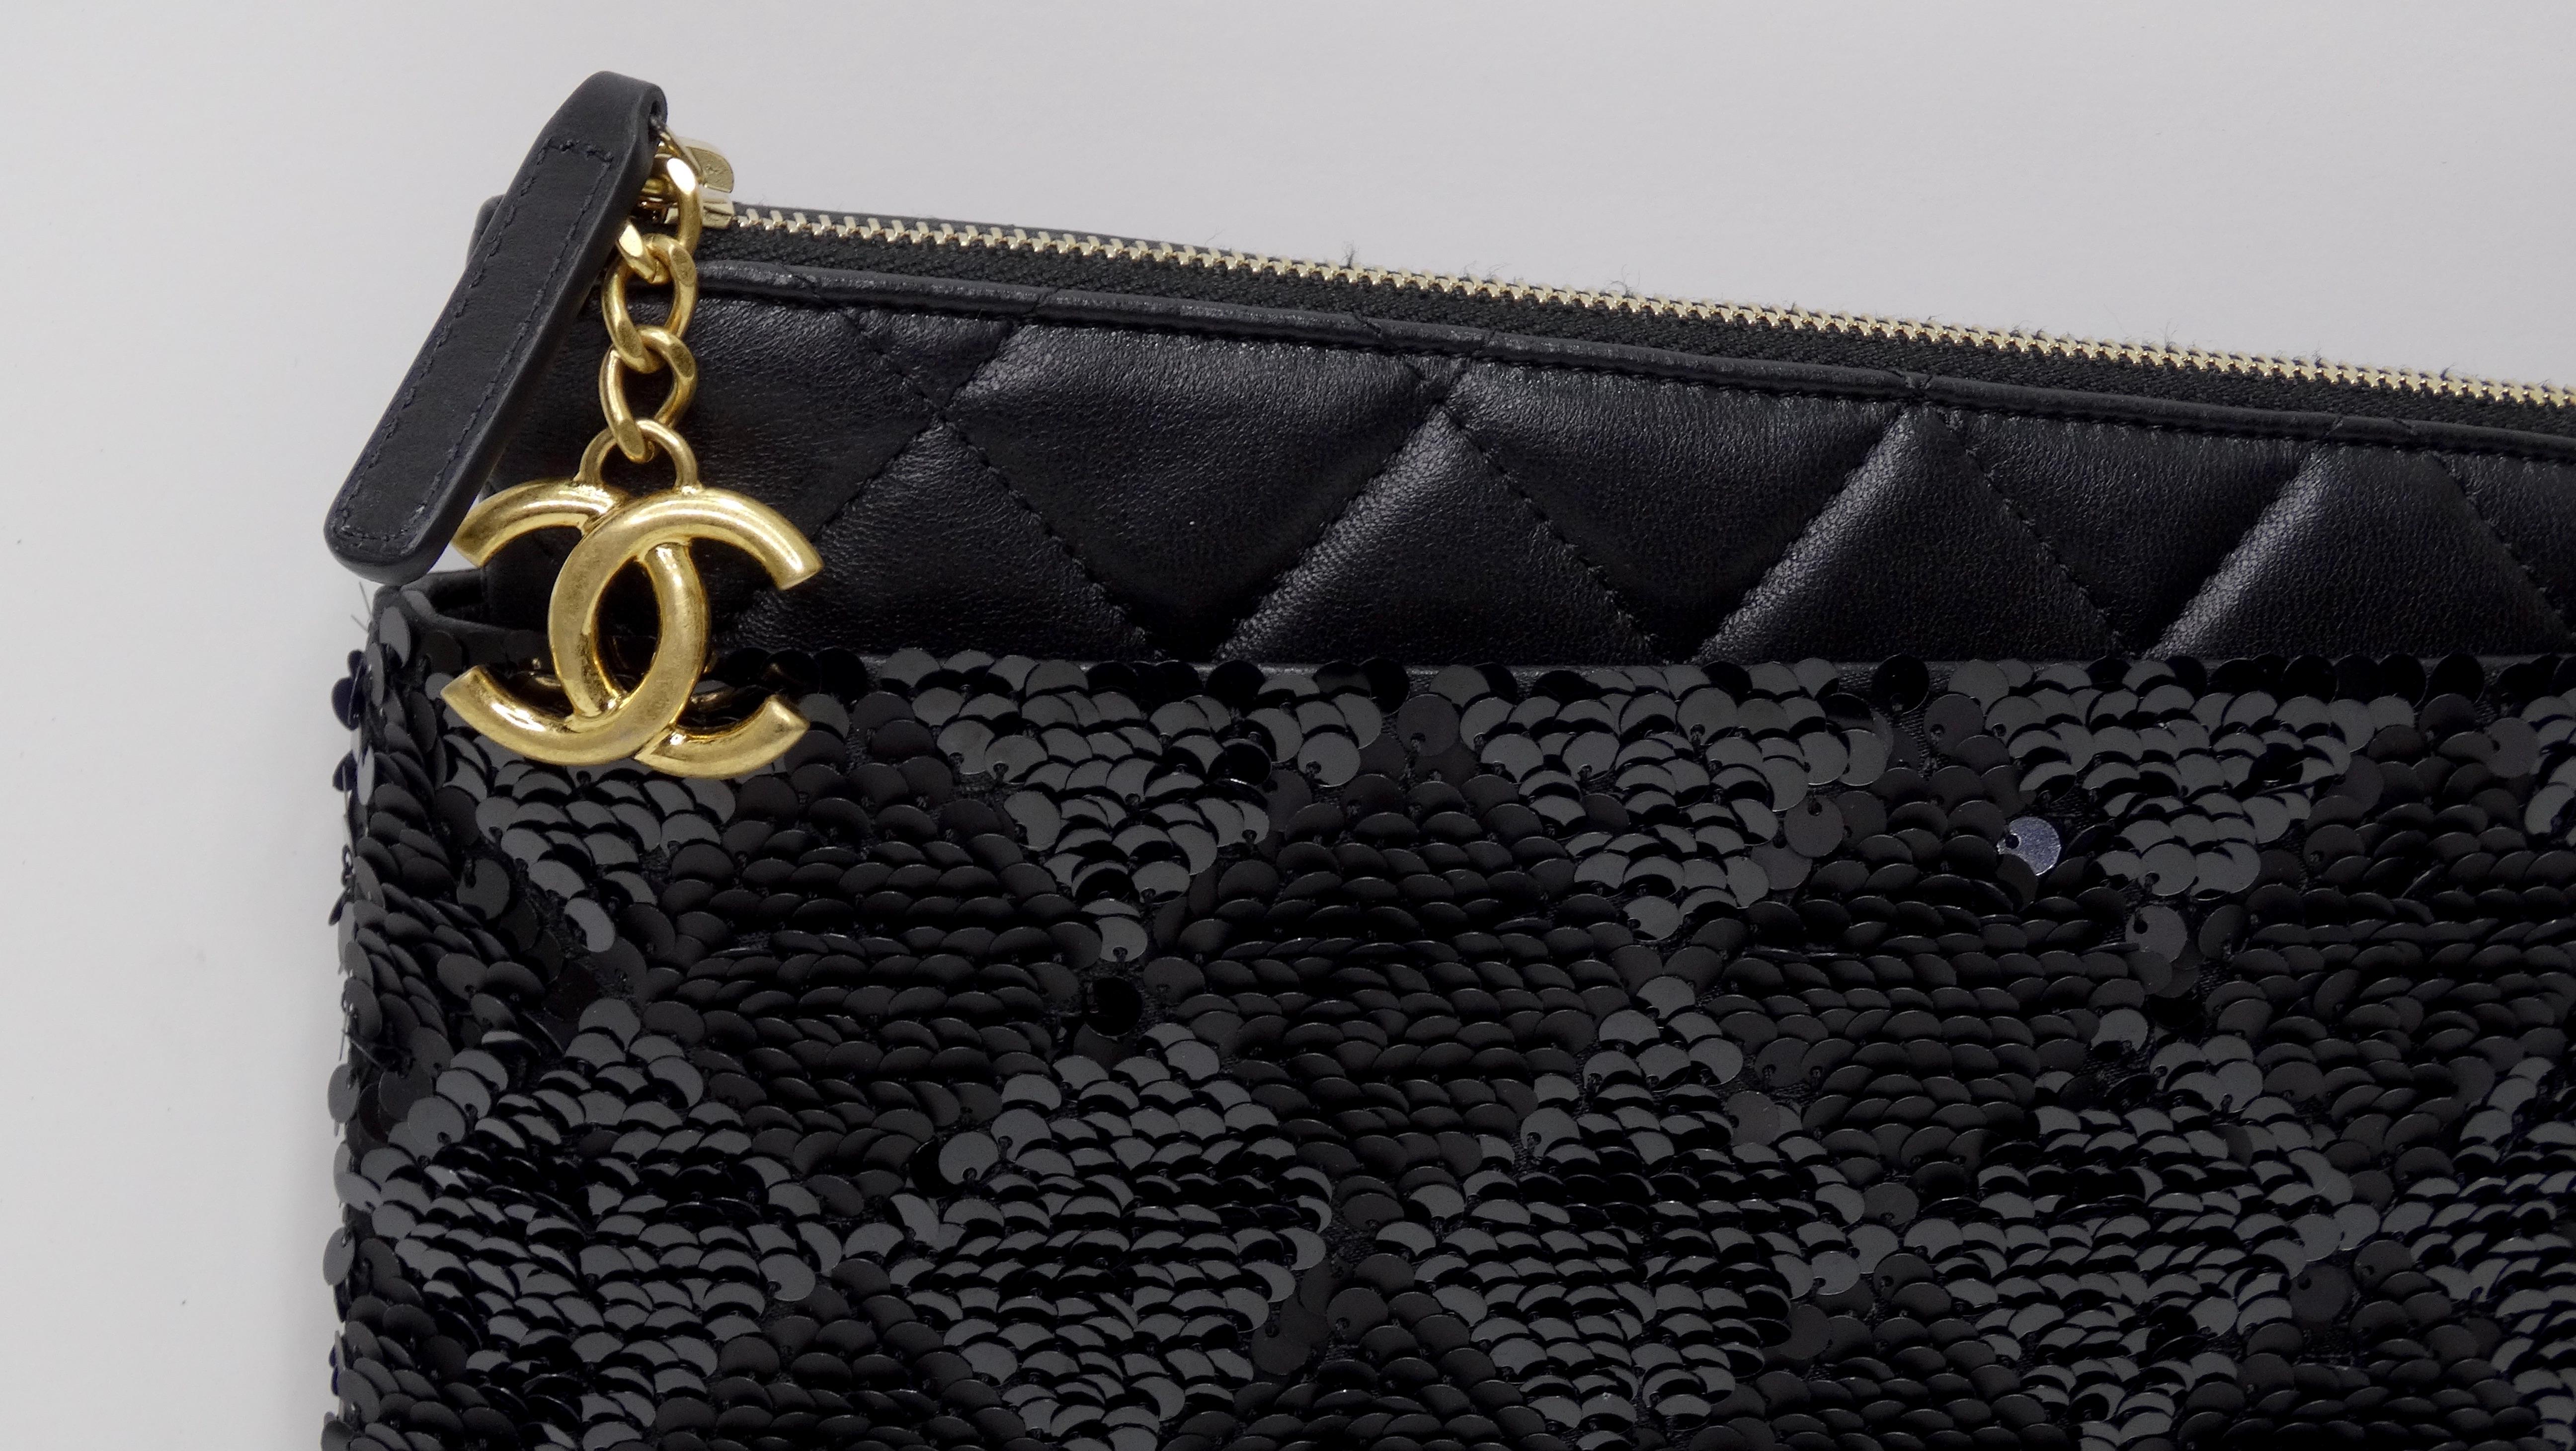 Mettez la main sur la pochette Chanel la plus luxueuse que vous puissiez trouver ! Il s'agit d'une pochette Chanel très texturée avec un cuir matelassé ultra-doux contrastant avec un corps en paillettes extrêmement texturé dans un motif à carreaux.